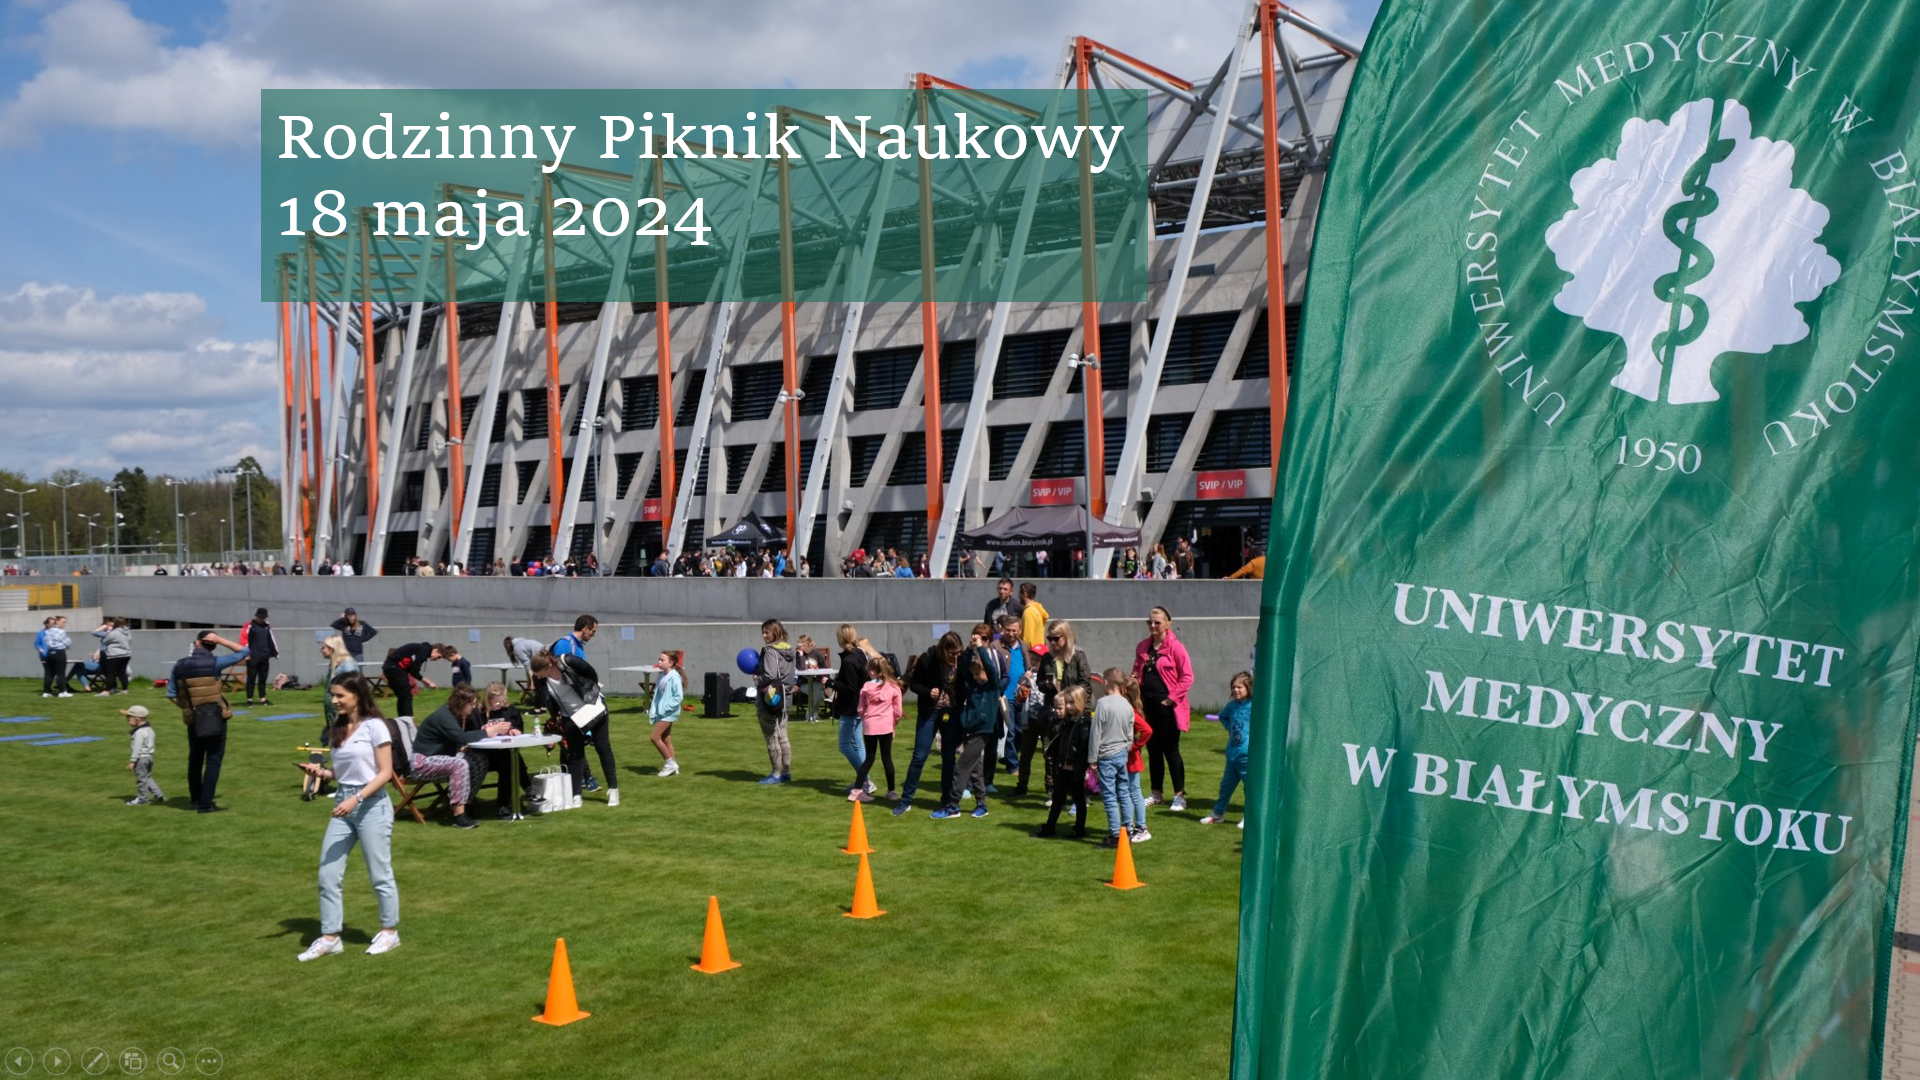 Napis Rodzinny Piknik Naukowy 18 maja na tle Stadionu Miejskiego w Białymstoku